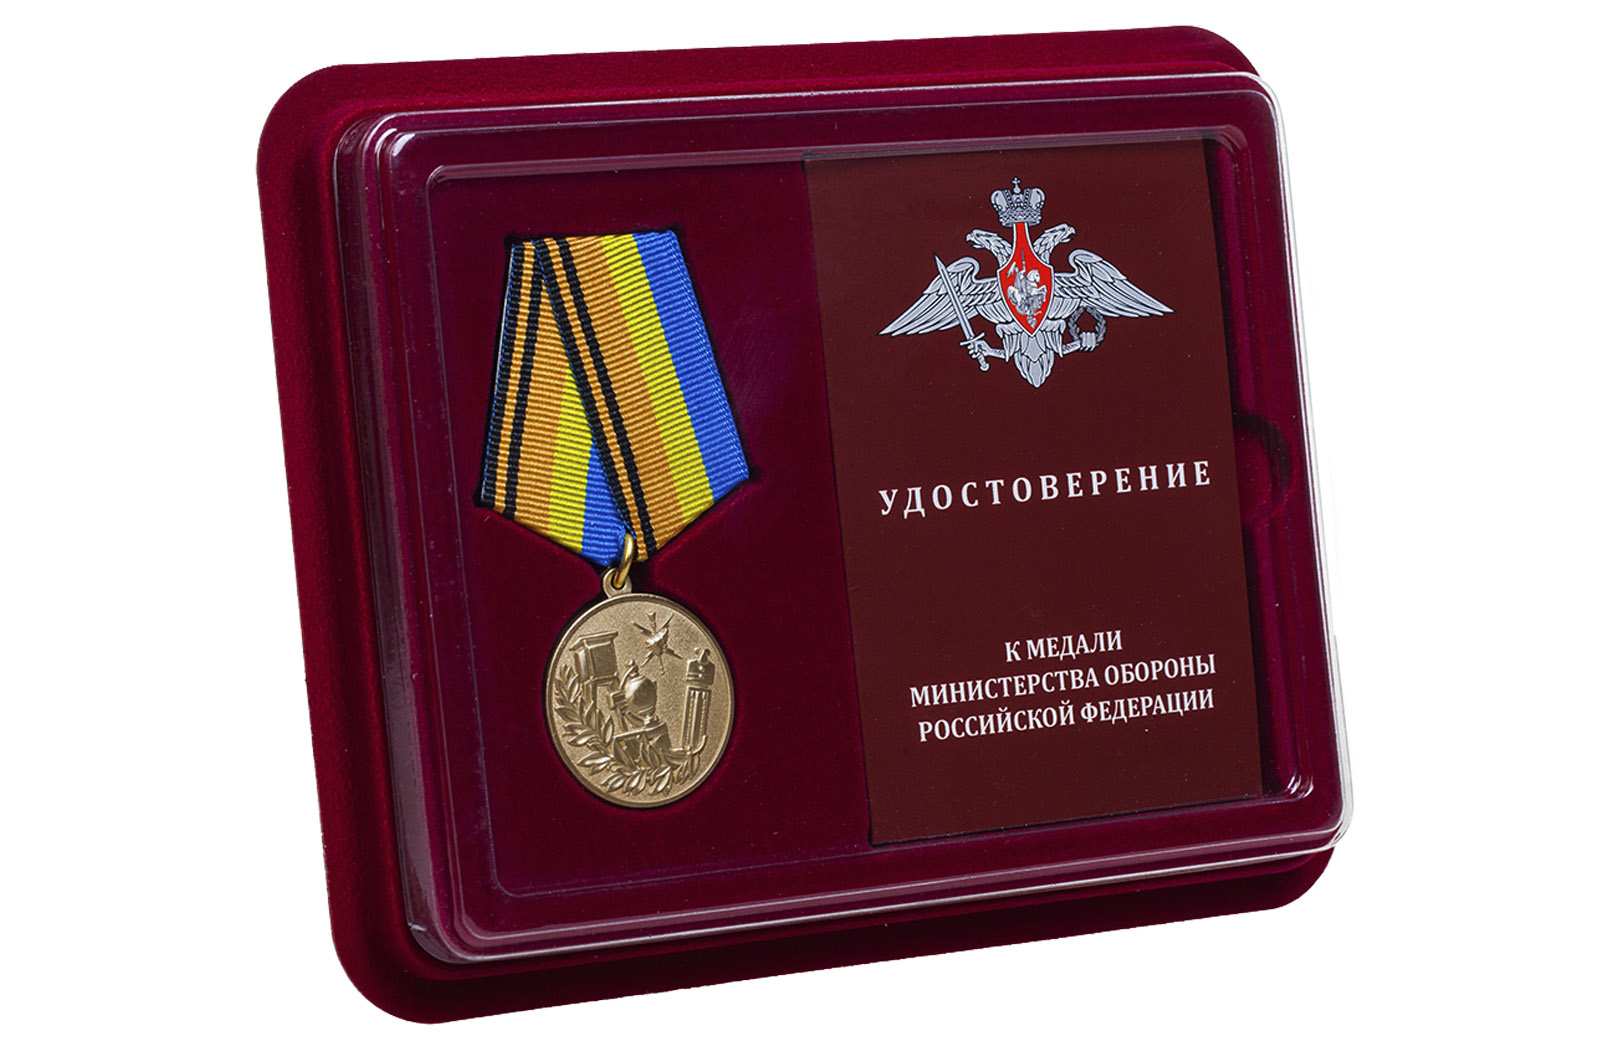 Медаль МО РФ "100 лет Гидрометеорологической службе" 